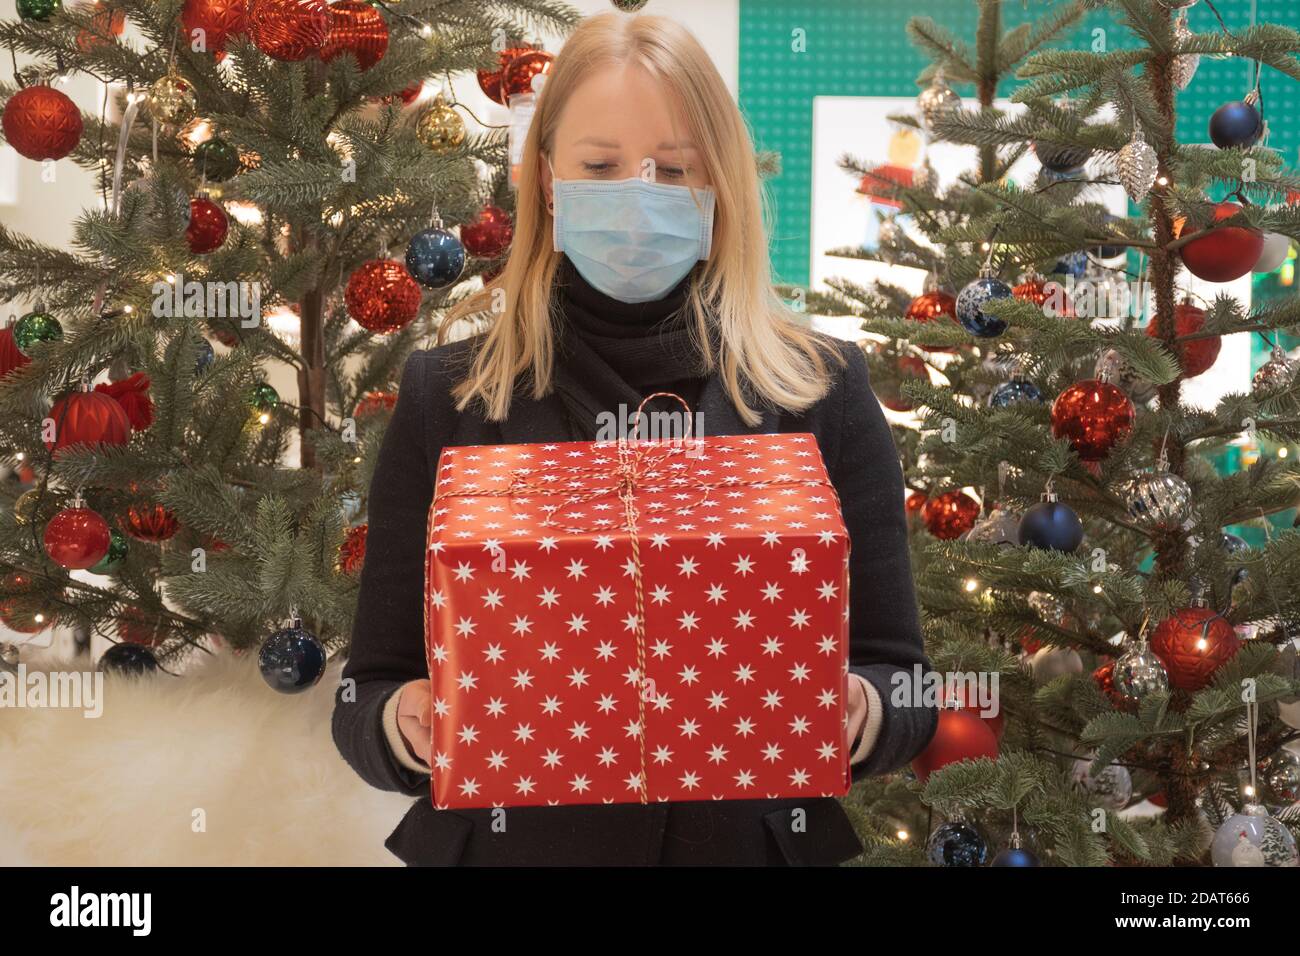 Schöne blonde Haare Mädchen mit schützenden Gesichtsmaske hält ein Geschenk oder Geschenk rote Box, Weihnachten Hintergrund mit Dekorationen und Bäumen Stockfoto